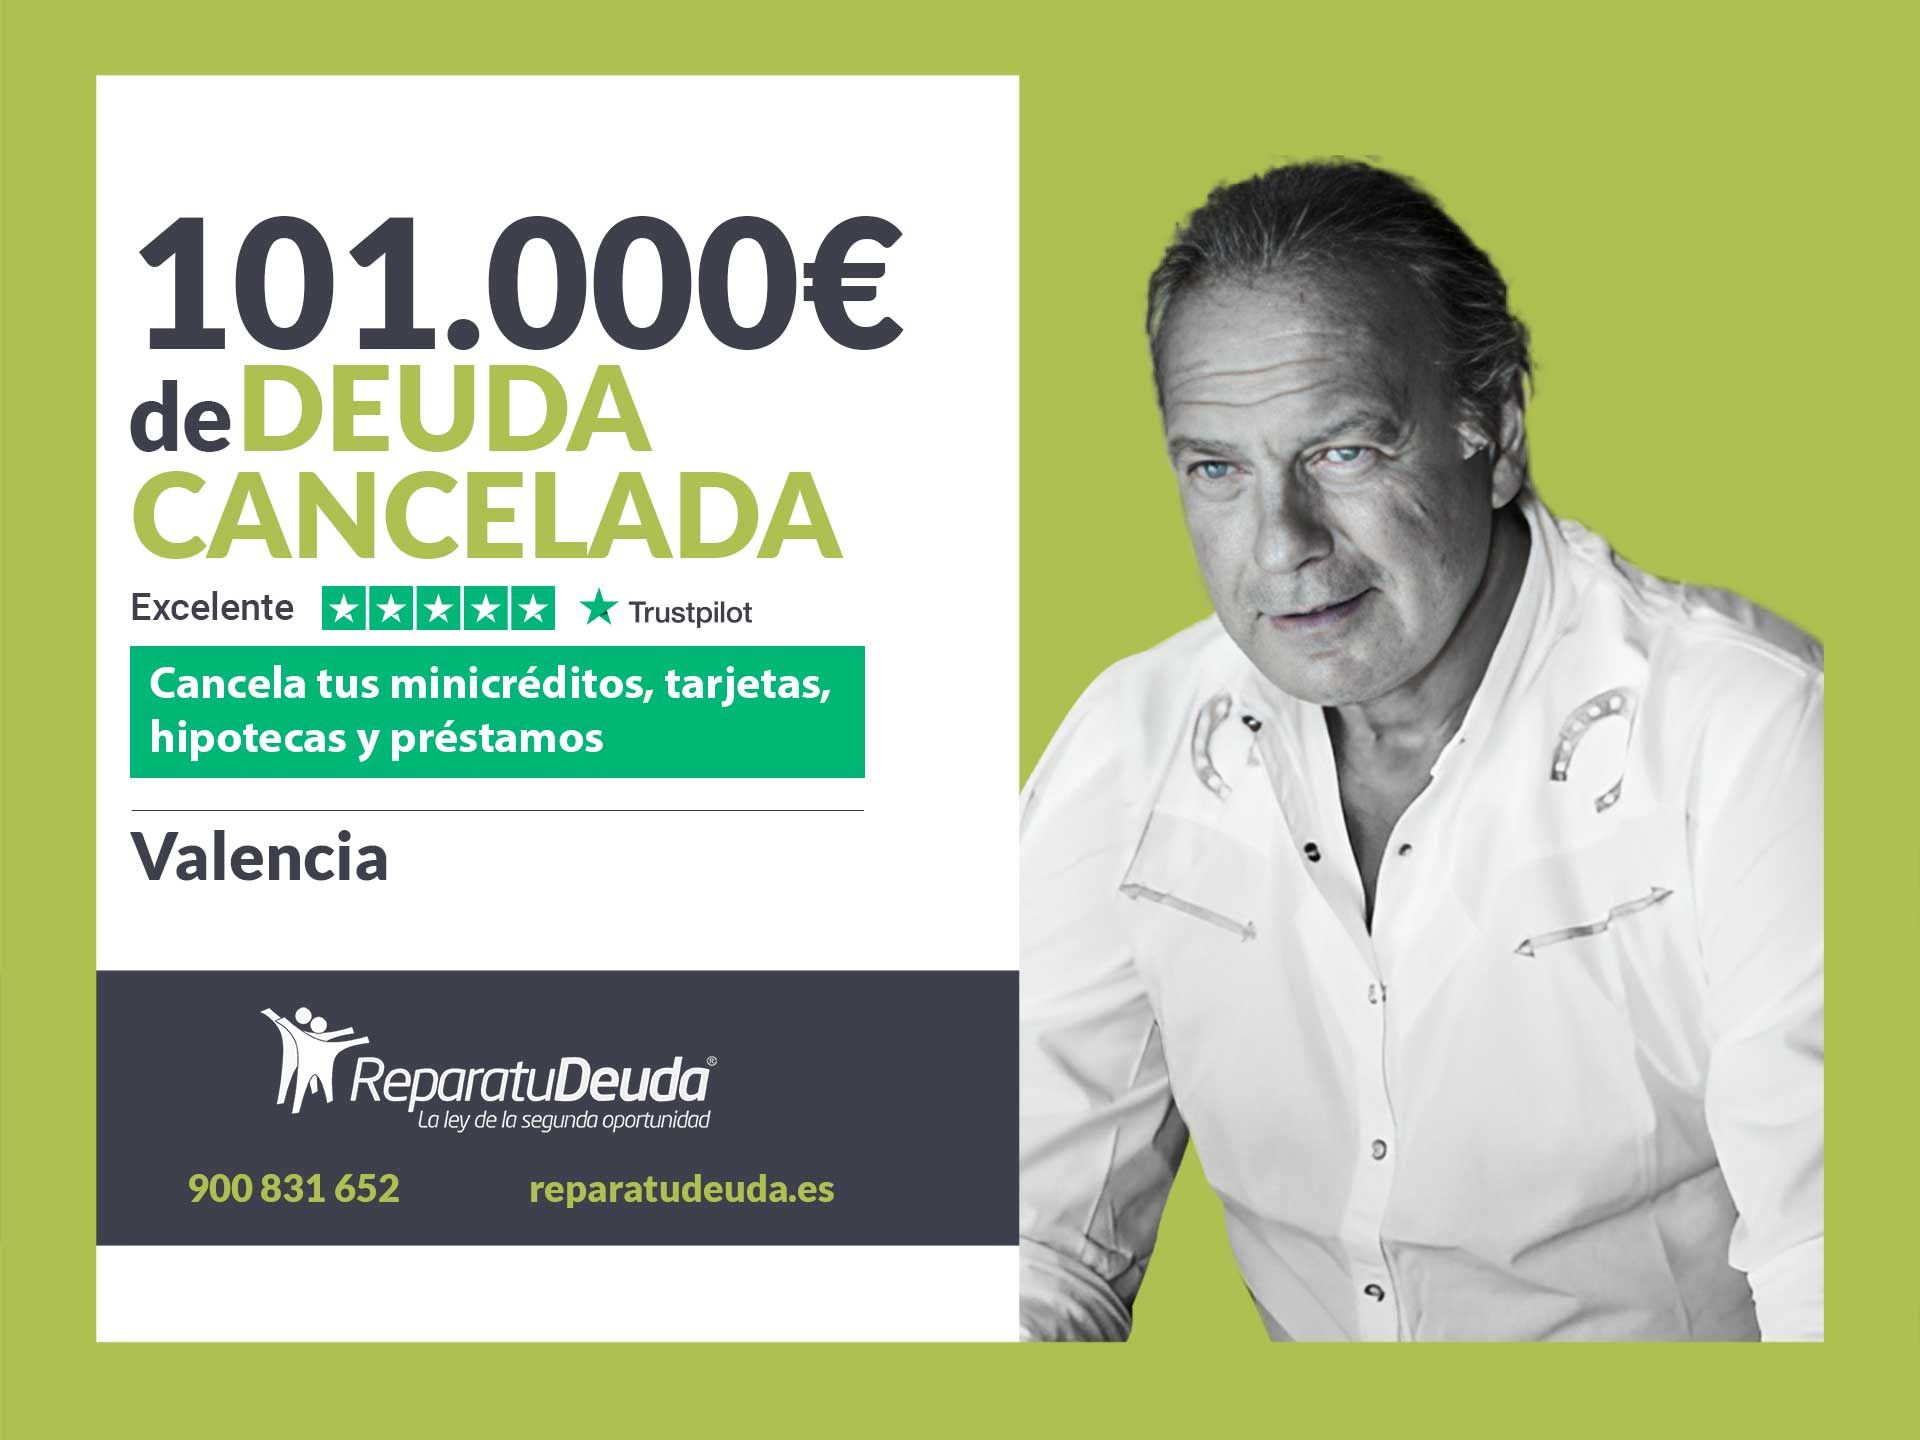 Repara tu Deuda Abogados cancela 101.000? en Valencia con la Ley de Segunda Oportunidad